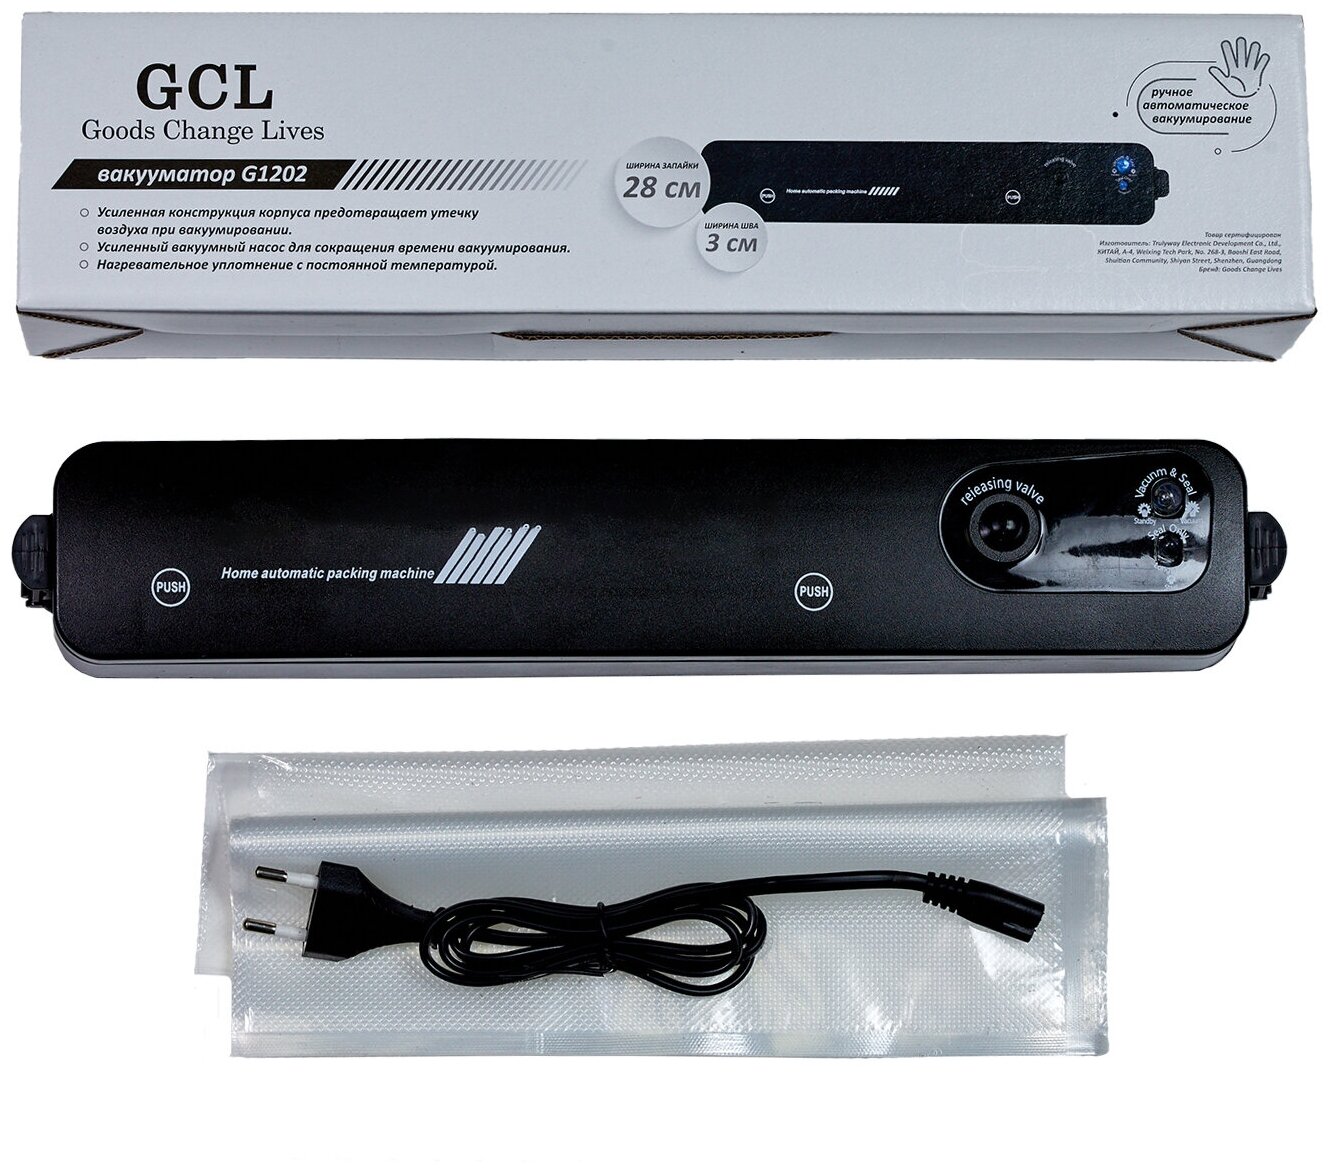 Вакууматор, вакууматор для продуктов, вакууматор домашний, вакуумный упаковщик GCL G-1202, упаковка продуктов в домашних условиях